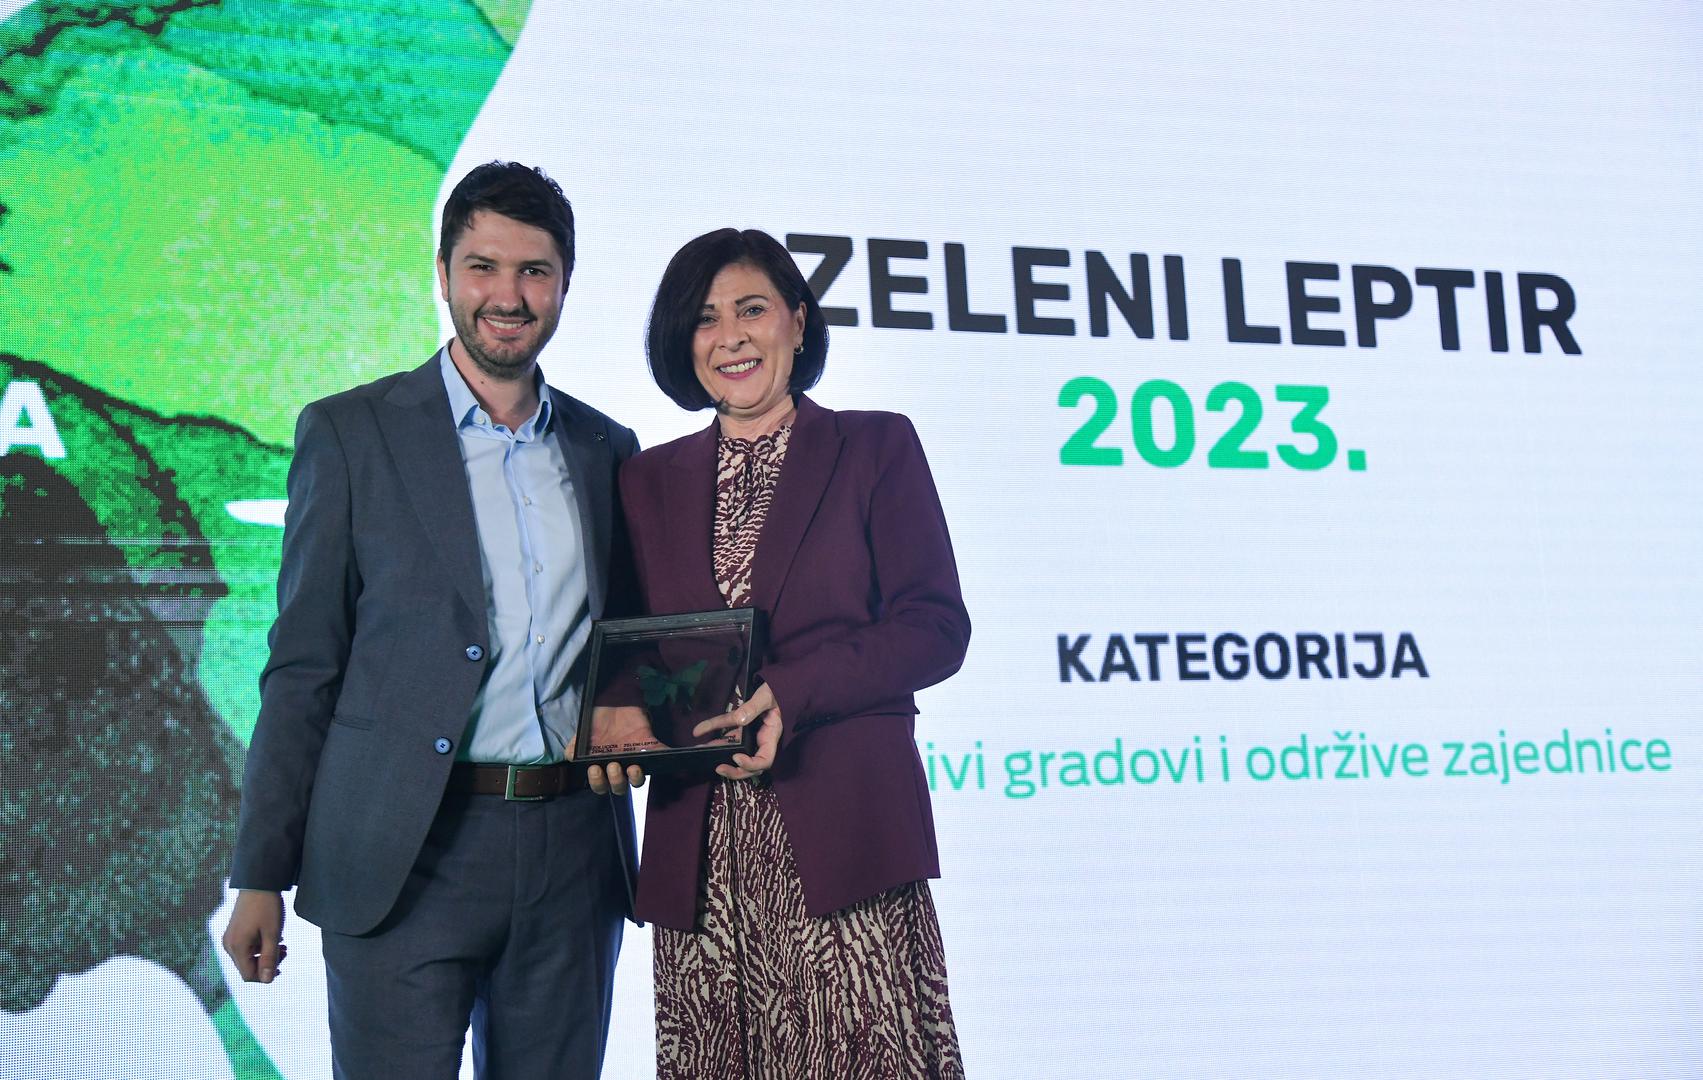 Komunalac osvojio prestižnu nagradu „Zeleni leptir 2023“ za najbolji ekološki projekt u kategoriji održivi gradovi i održive zajednice